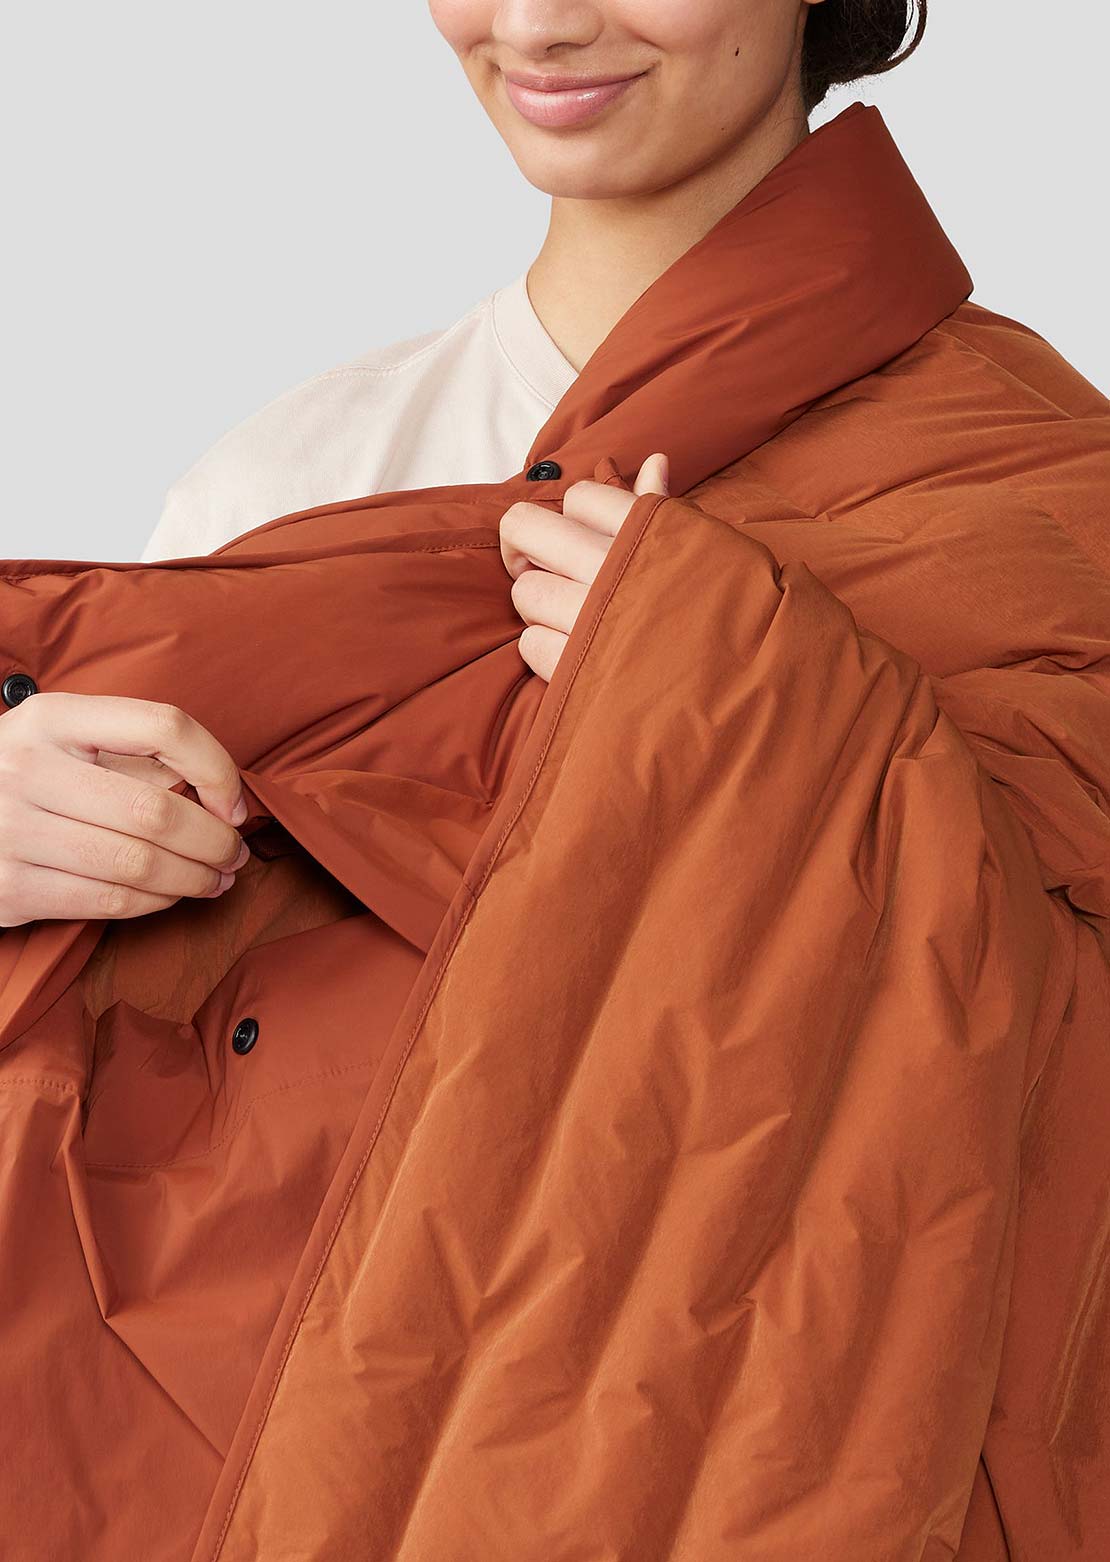 Mountain Hardwear Unisex Stretchdown Quilt Blanket Iron Oxide